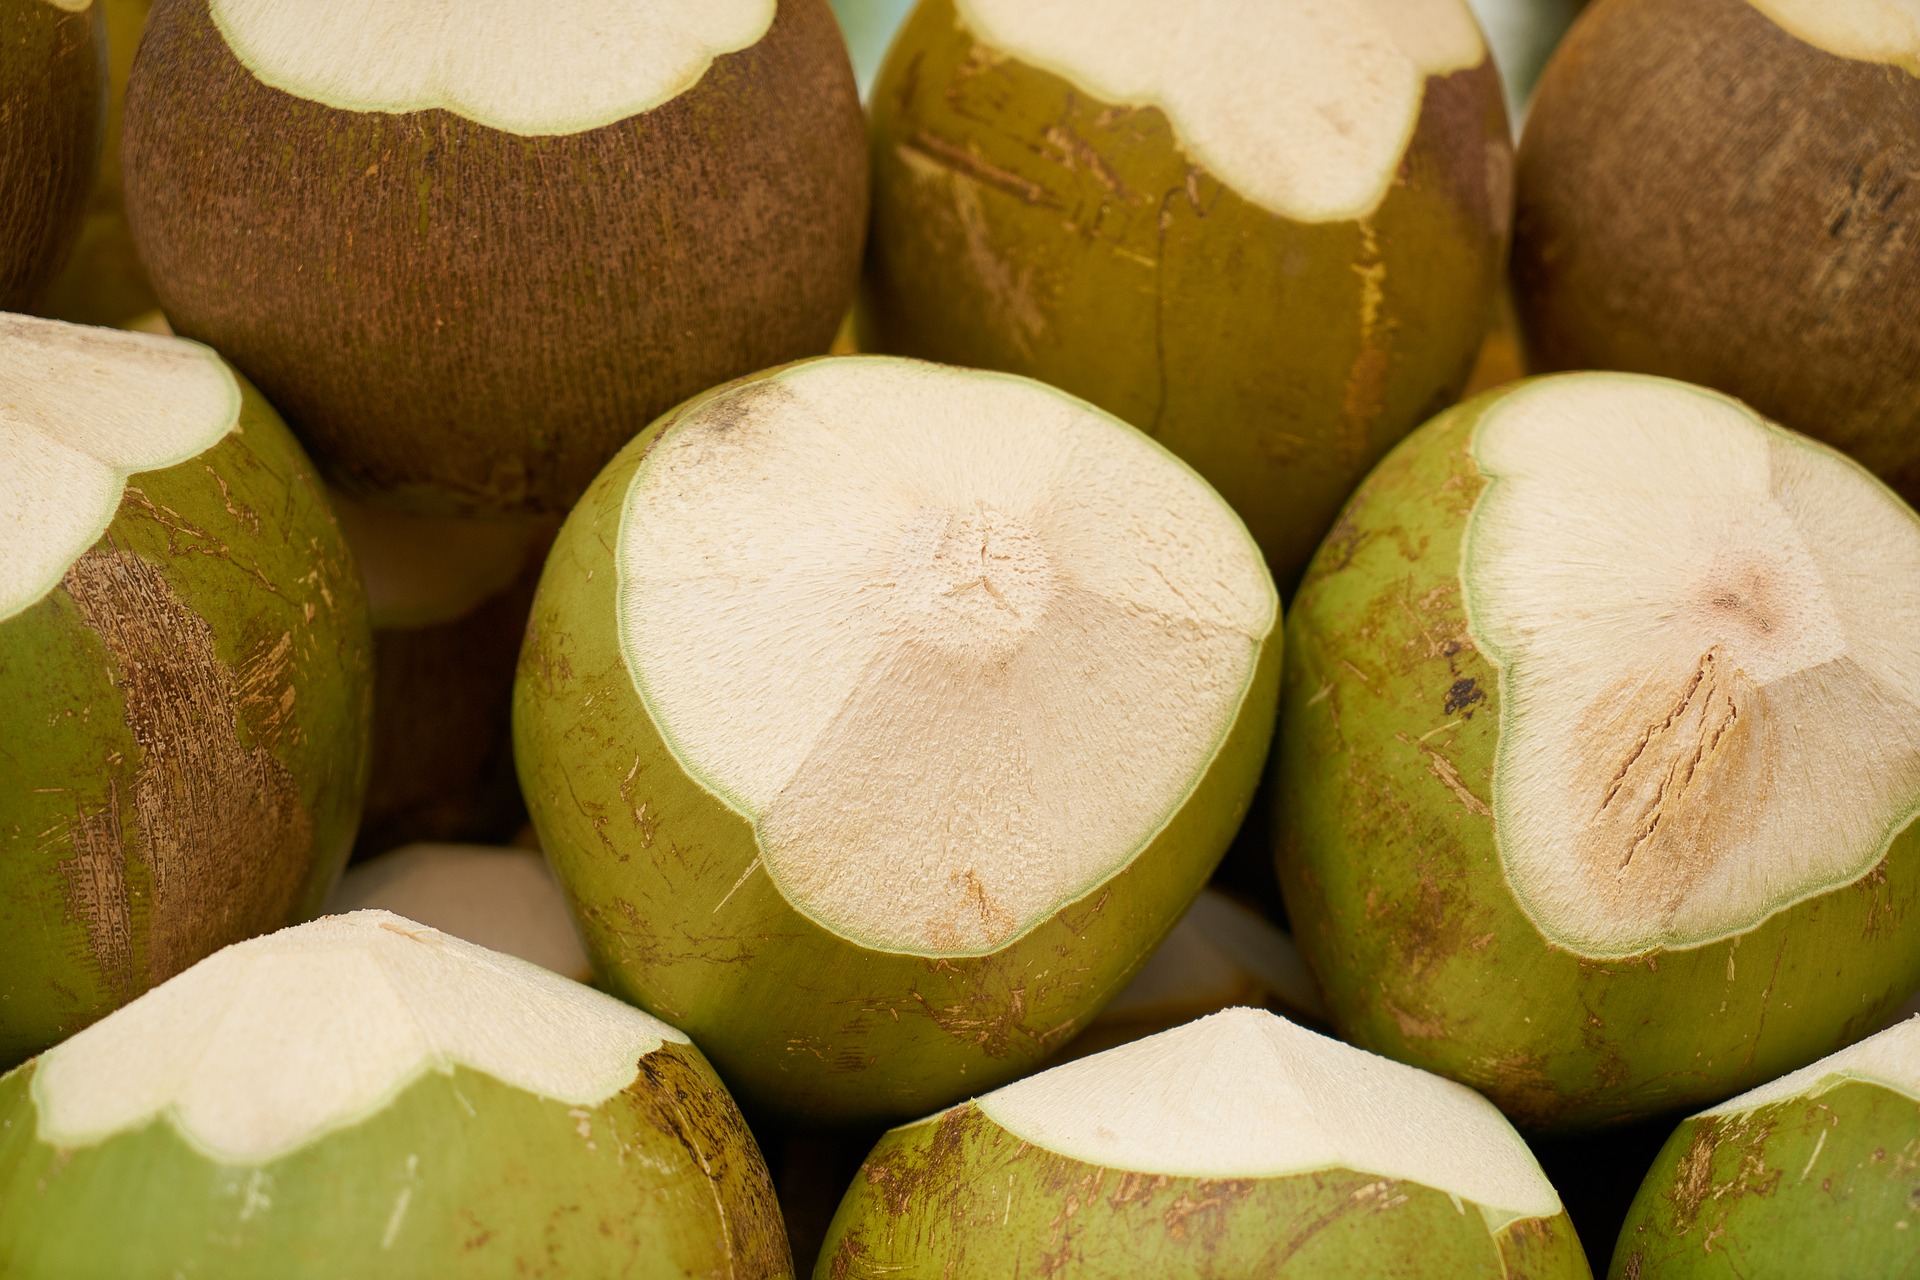 Benefits Of Coconut Water